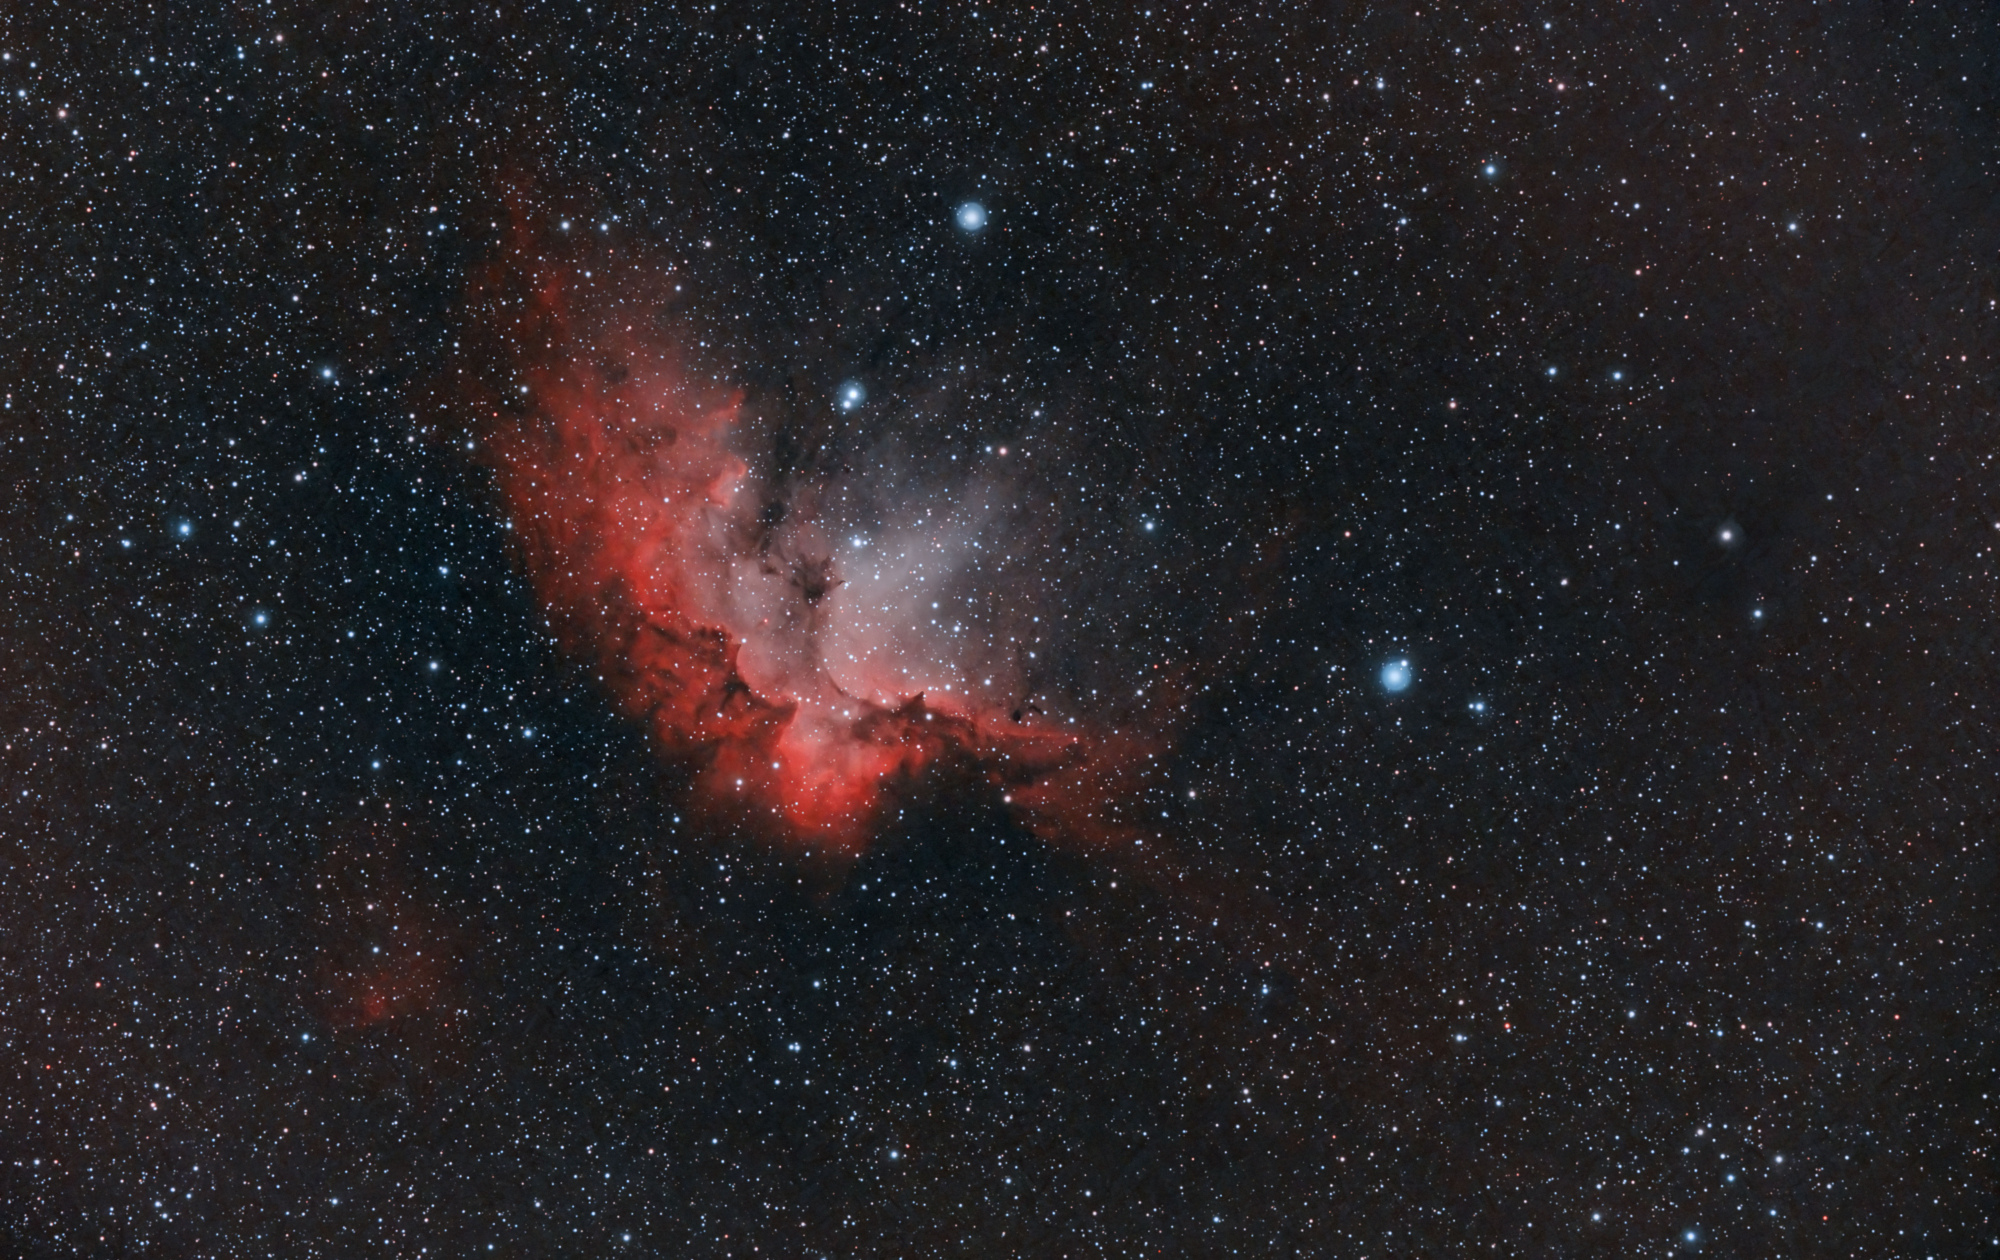 NGC 7380_comb-HOOrvb-SIRIL-cs5-FINAL-10.jpg